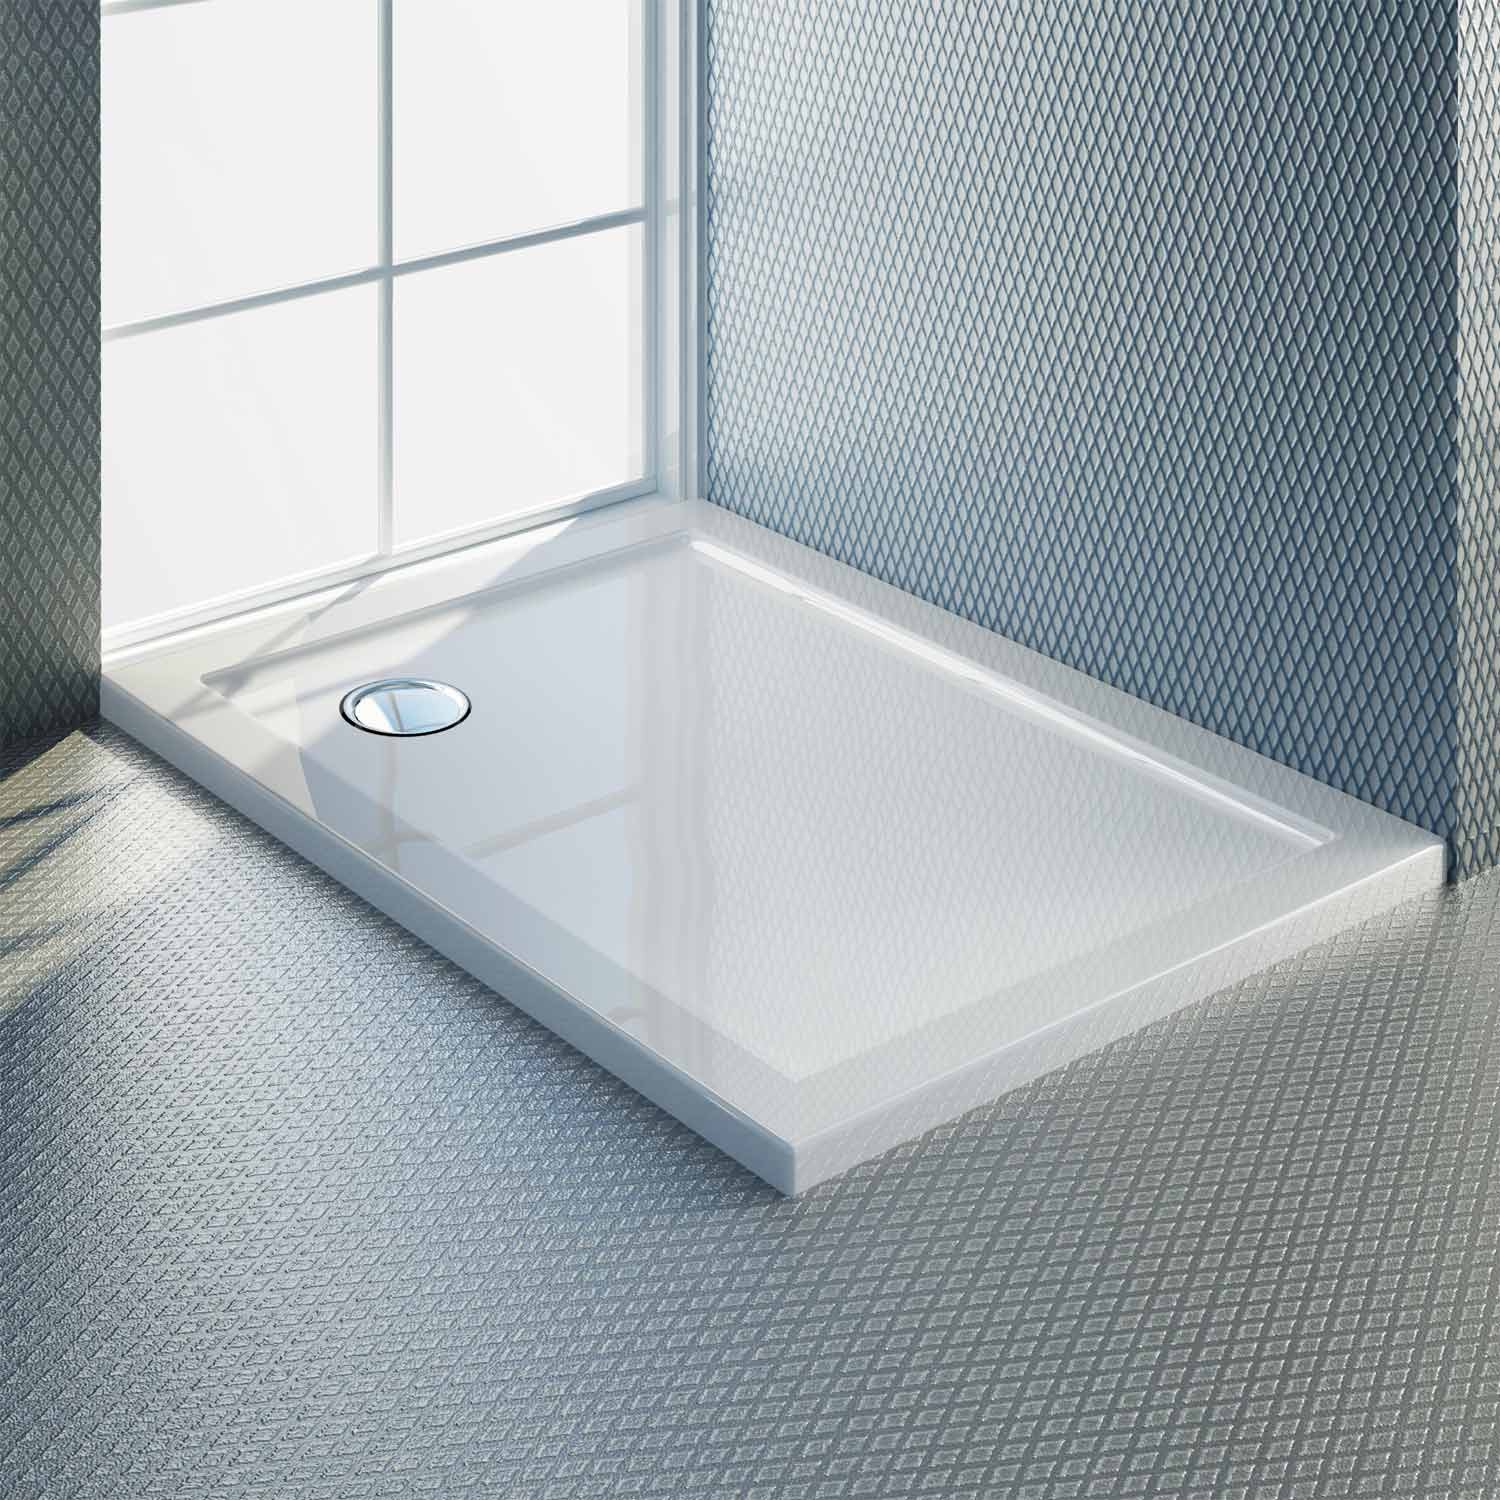 Ultra-thin 4cm acrylic shower tray